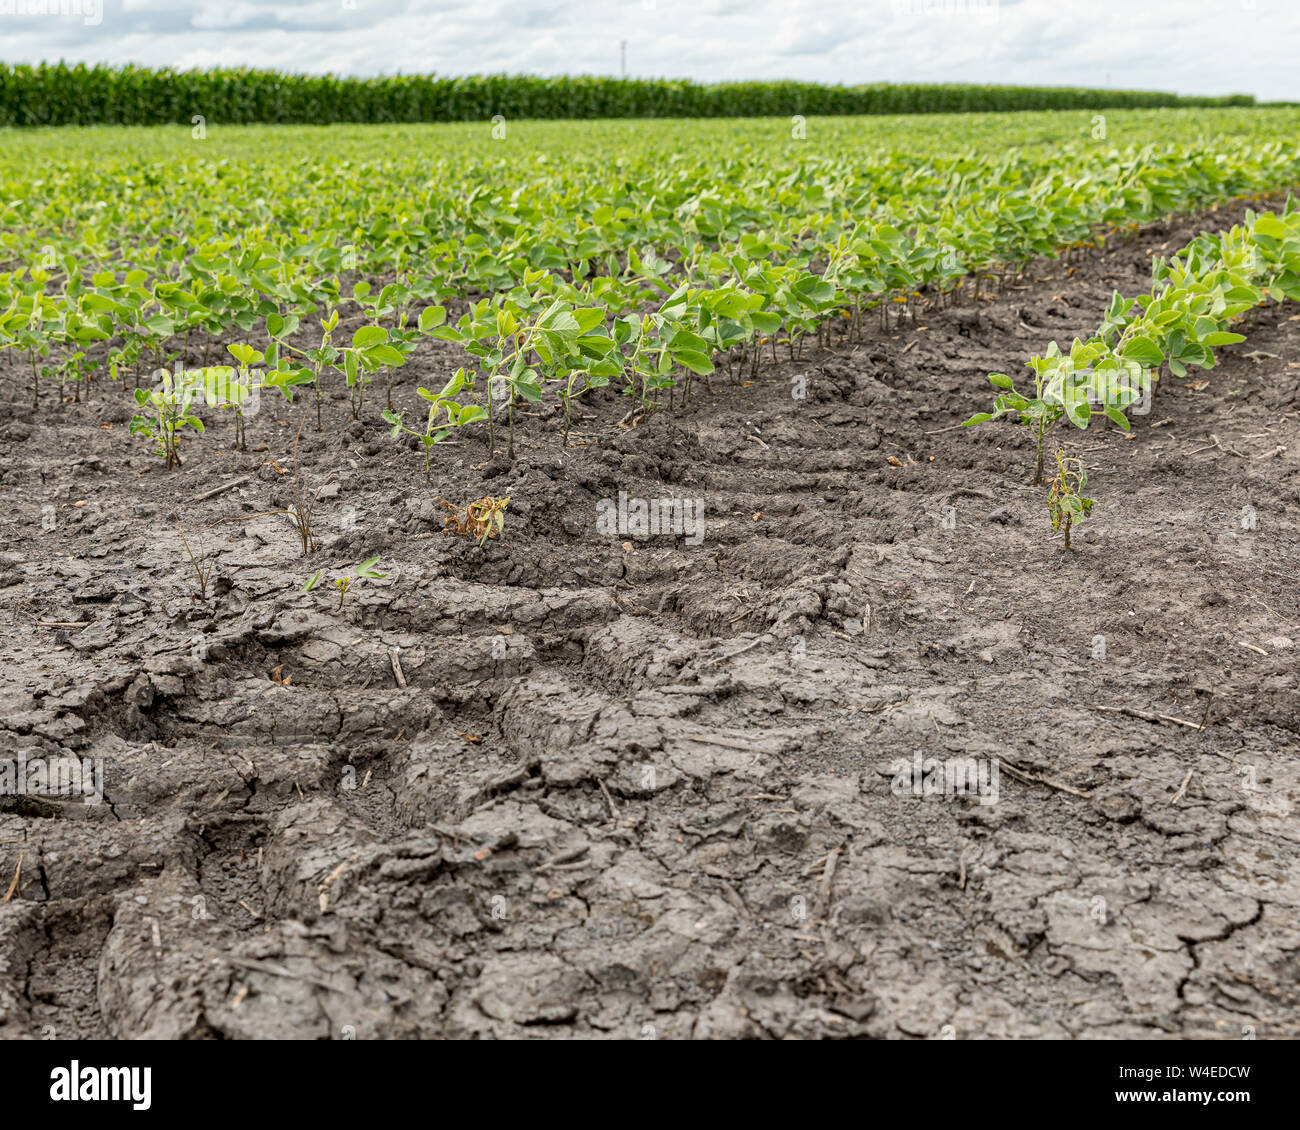 La bande de roulement des pneus du tracteur, marque les pistes entre les rangées d'un champ agricole de soja Banque D'Images